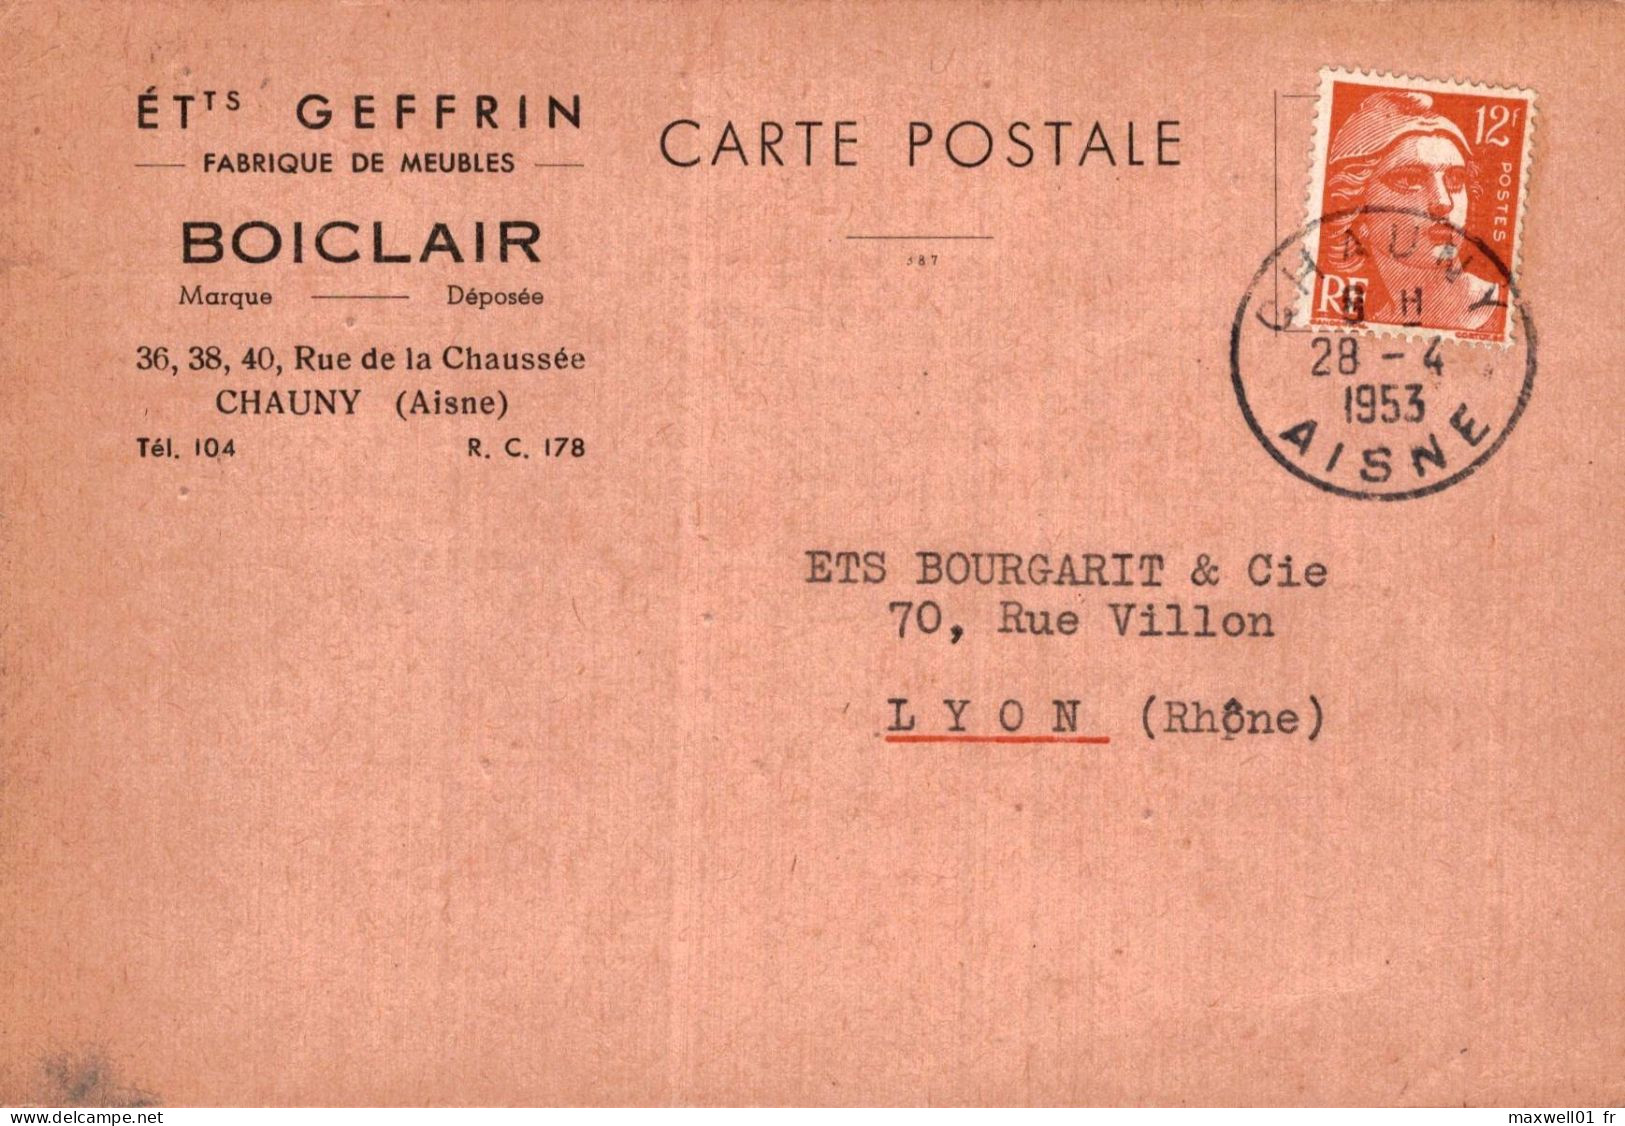 O8 - Carte Postale Publicité - Ets Geffrin - Fabrique De Meubles - Boiclair - Chauny (Aisne) - Publicité